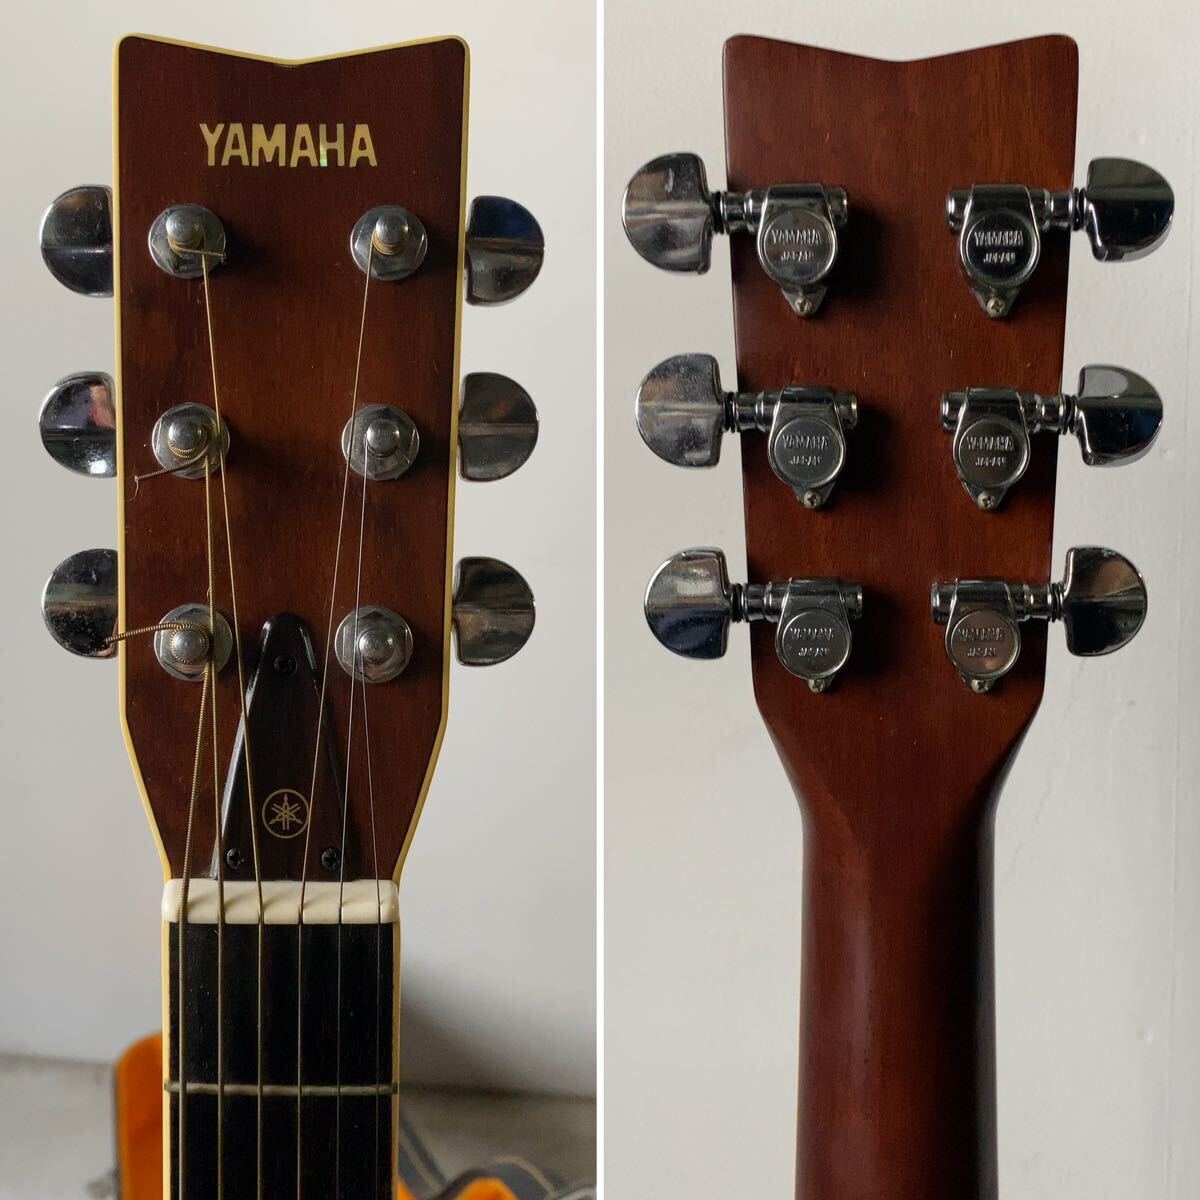 YAMAHA ヤマハ FG-301B アコースティックギター 弦楽器 ギター アコギ 楽器 ケース付き ヴィンテージ フォークギター 綺麗 中古品の画像2